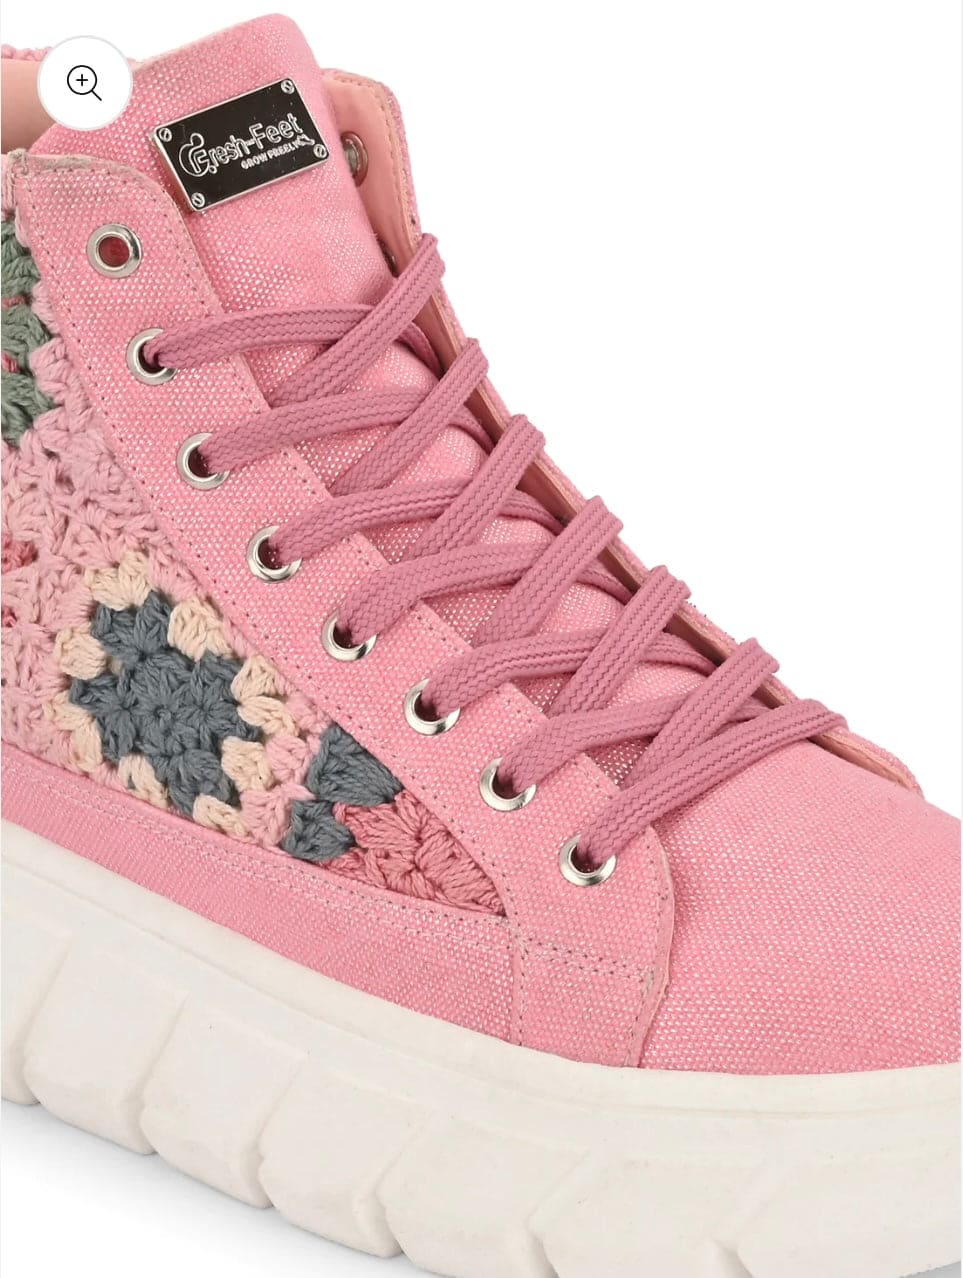 Crosia Berry Bloom Sneakers